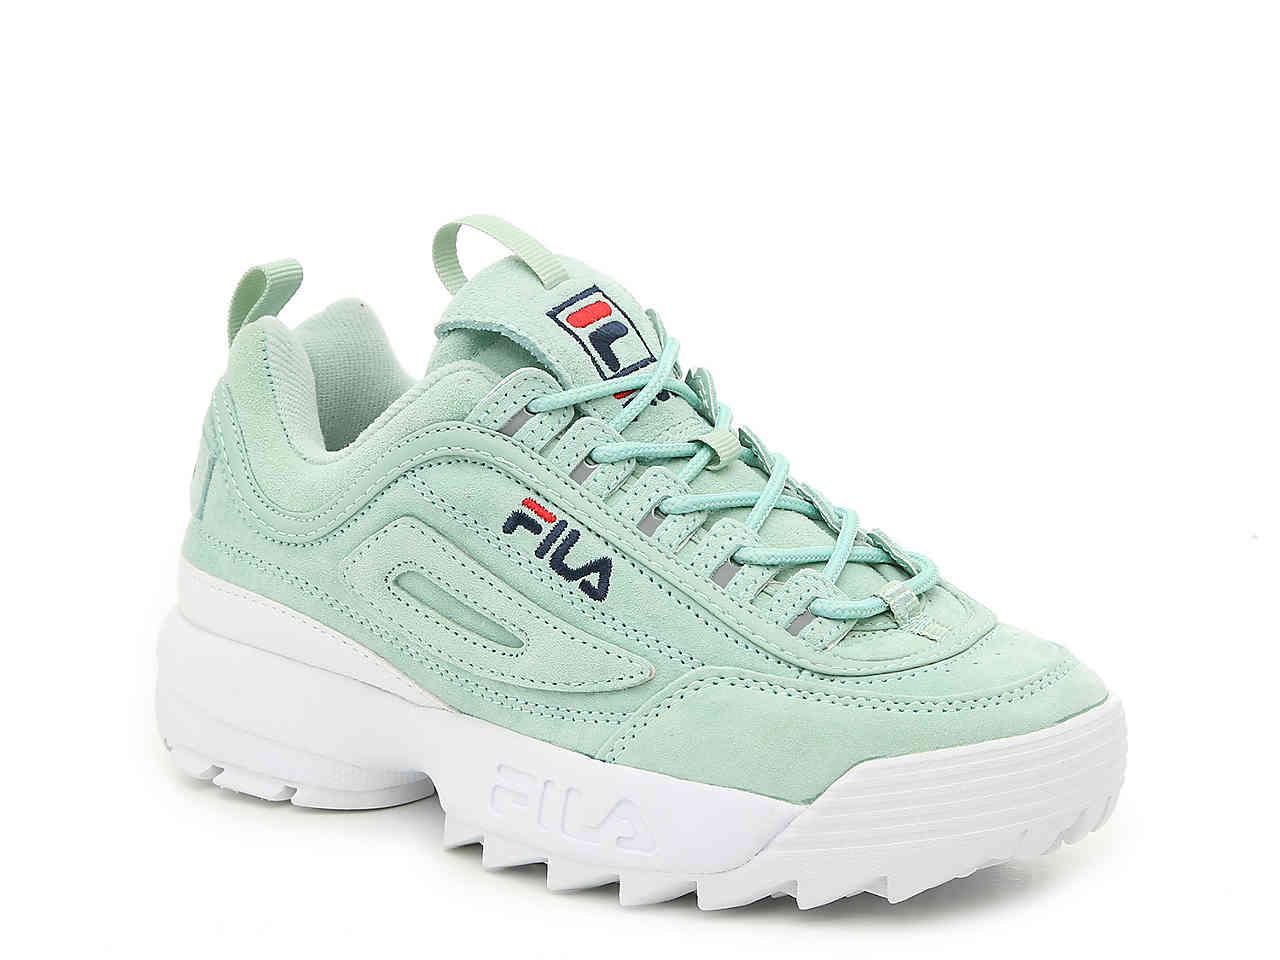 Light Blue Fila Shoes | lupon.gov.ph